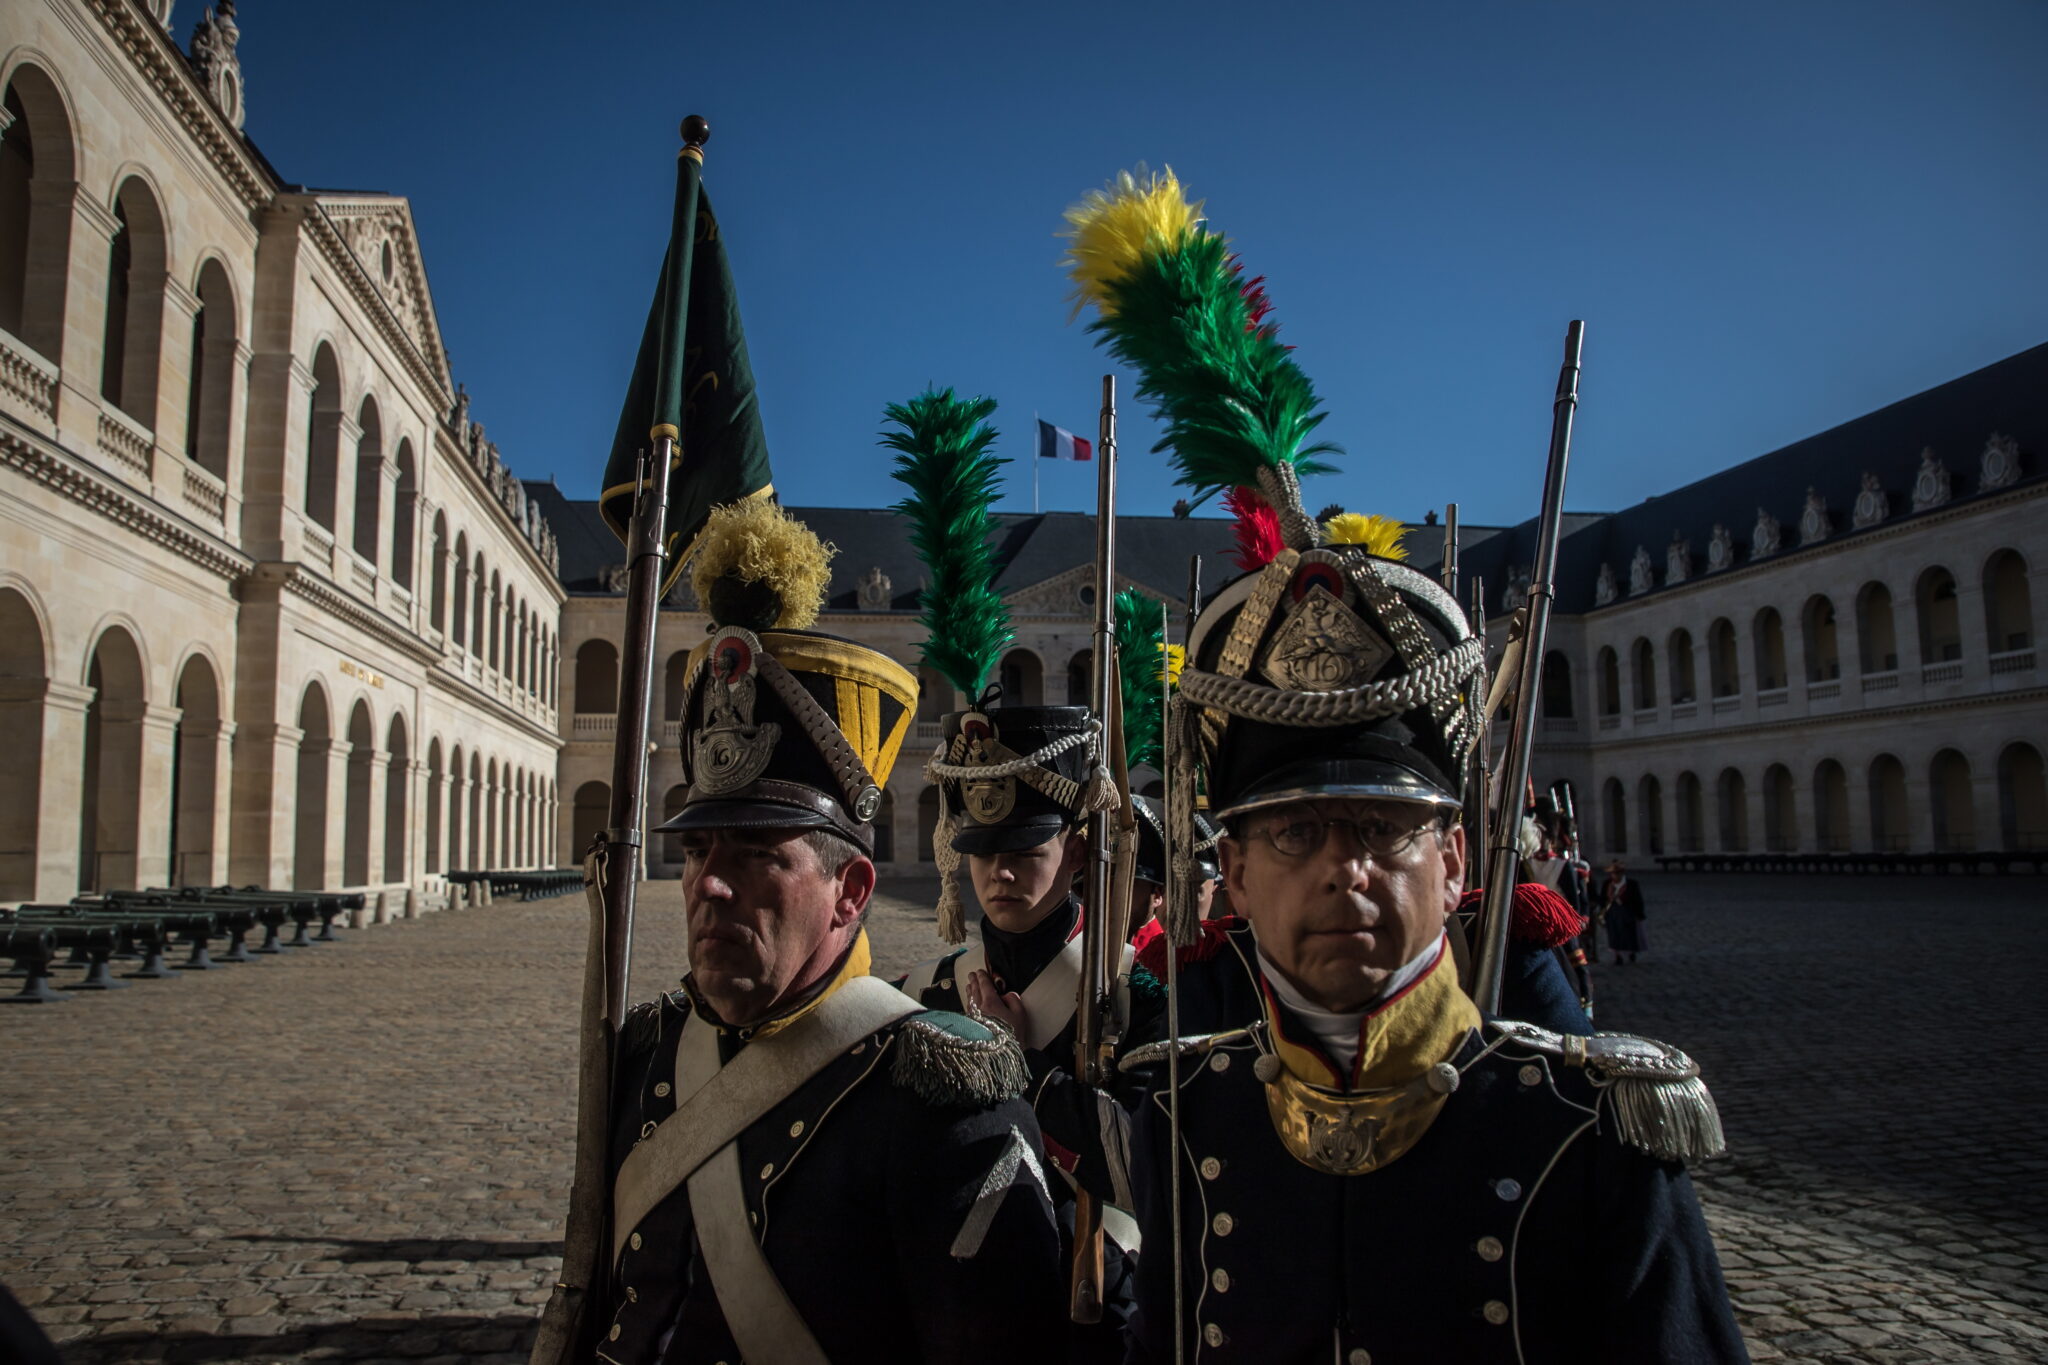 Rekonstruktorzy przebrani za żołnierzy Armii Cesarskiej na ceremonii ku czci francuskiego cesarza Napoleona z okazji dwusetnej rocznicy jego śmierci w hotelu Invalides National Hotel w Paryżu,fot. EPA / CHRISTOPHE PETIT TESSON